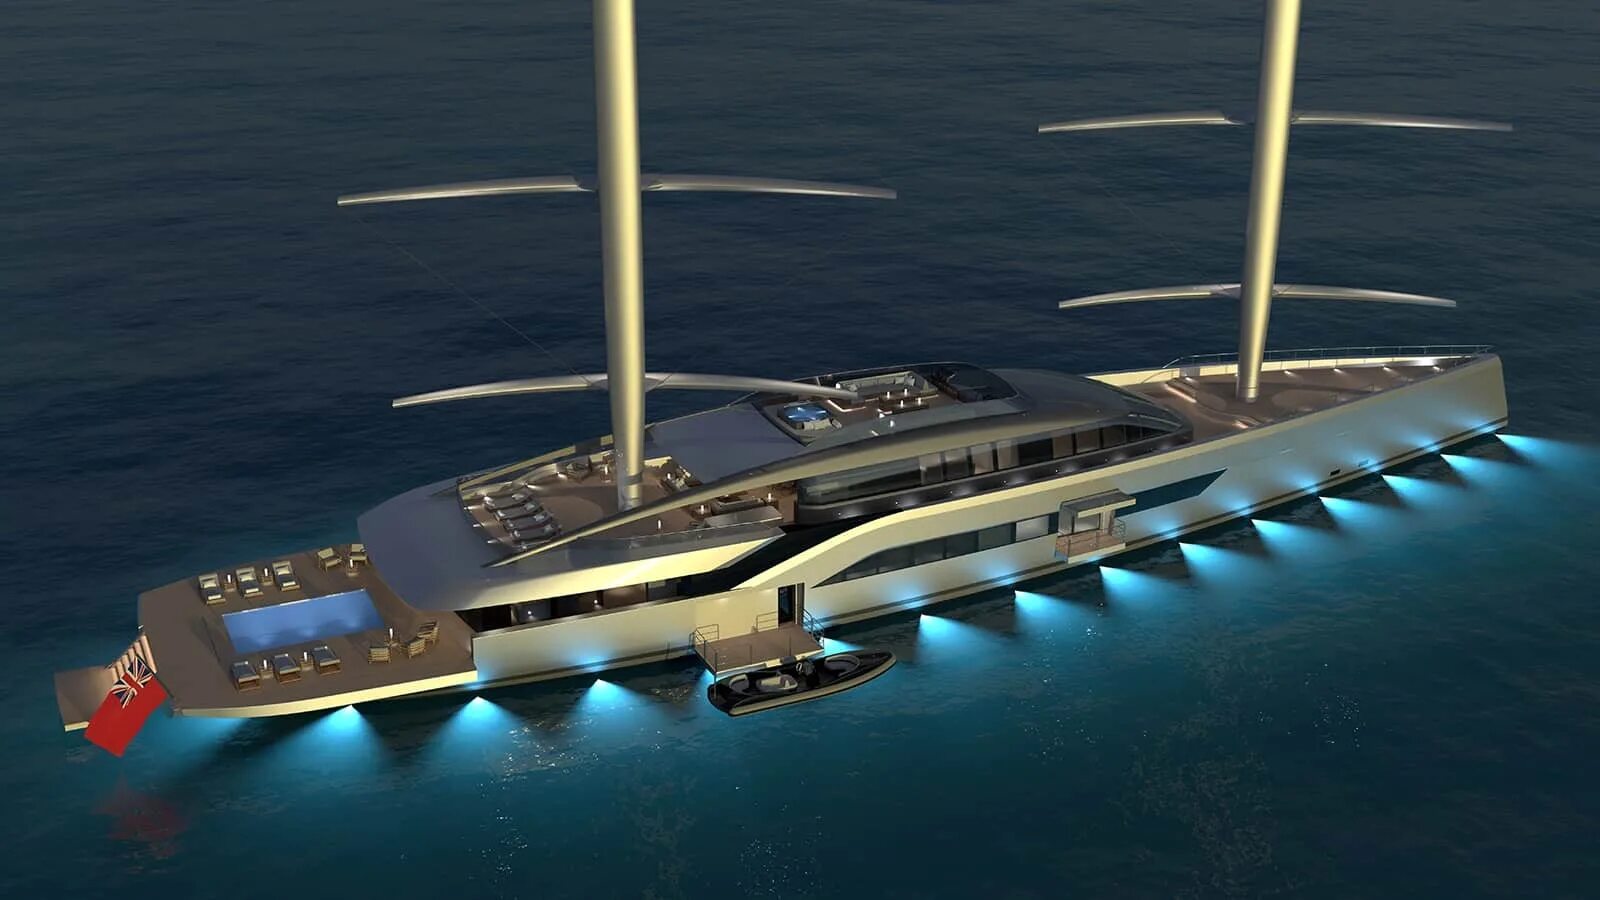 Гибрид саней и яхты 4. DYNARIG яхта. Концепт 150-метровой мегаяхты. Концепт яхты Hybrid 2021 Motor Yacht Concept от голландцев. Perini Navi 335 футов (102 м) Falcon Rig Superyacht.